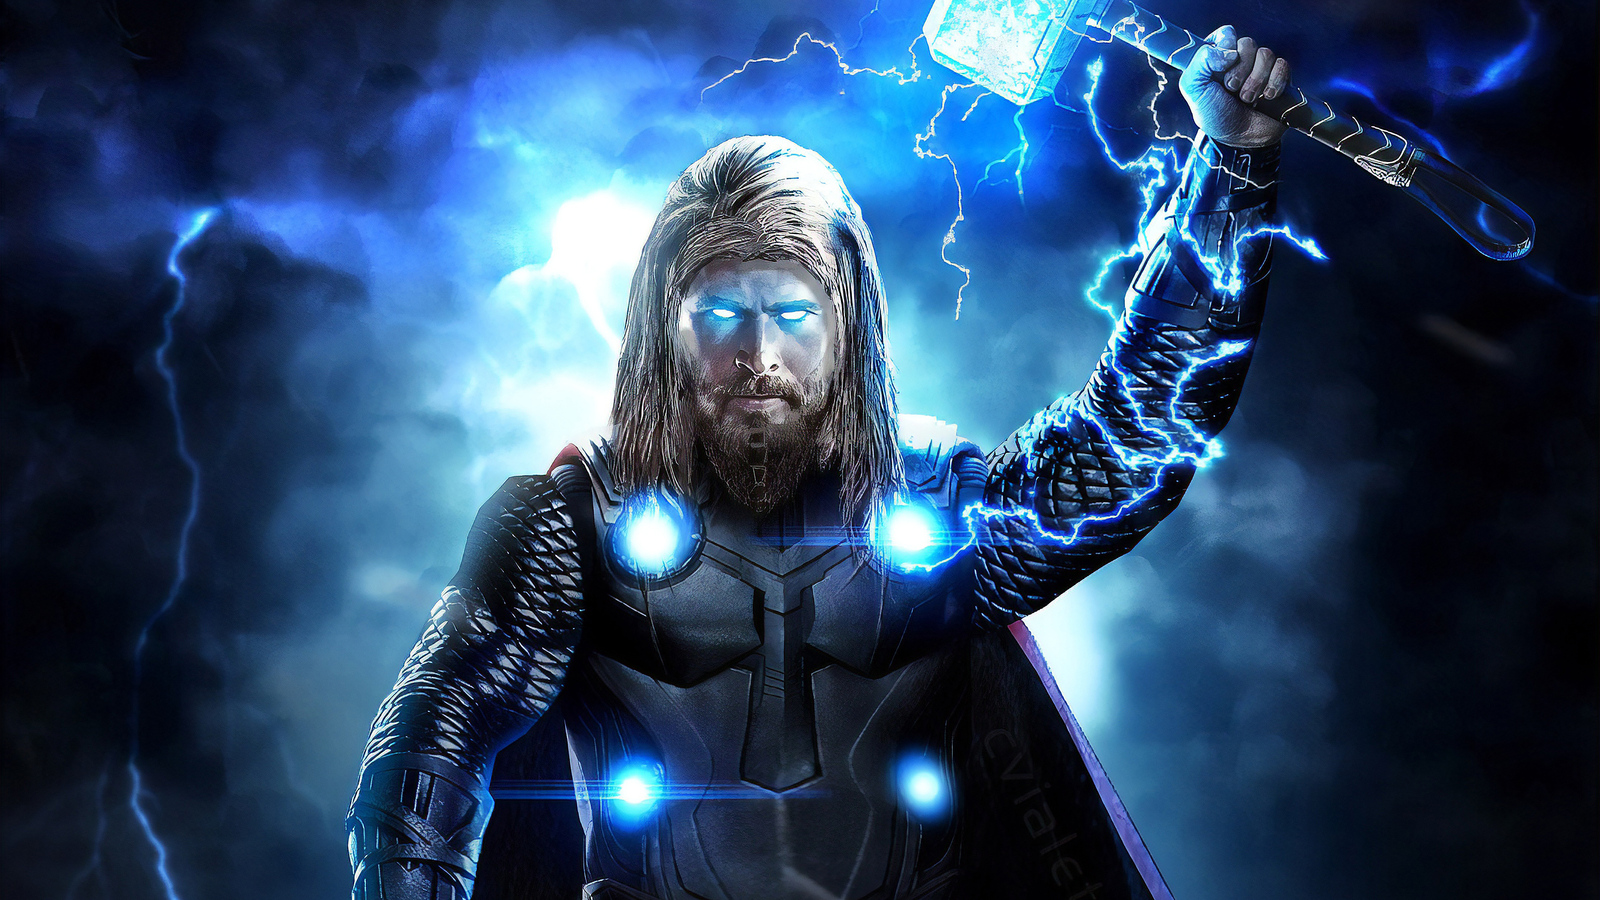 1600x900 Thor Avengers Endgame Full Power 1600x900 Resolution HD ...